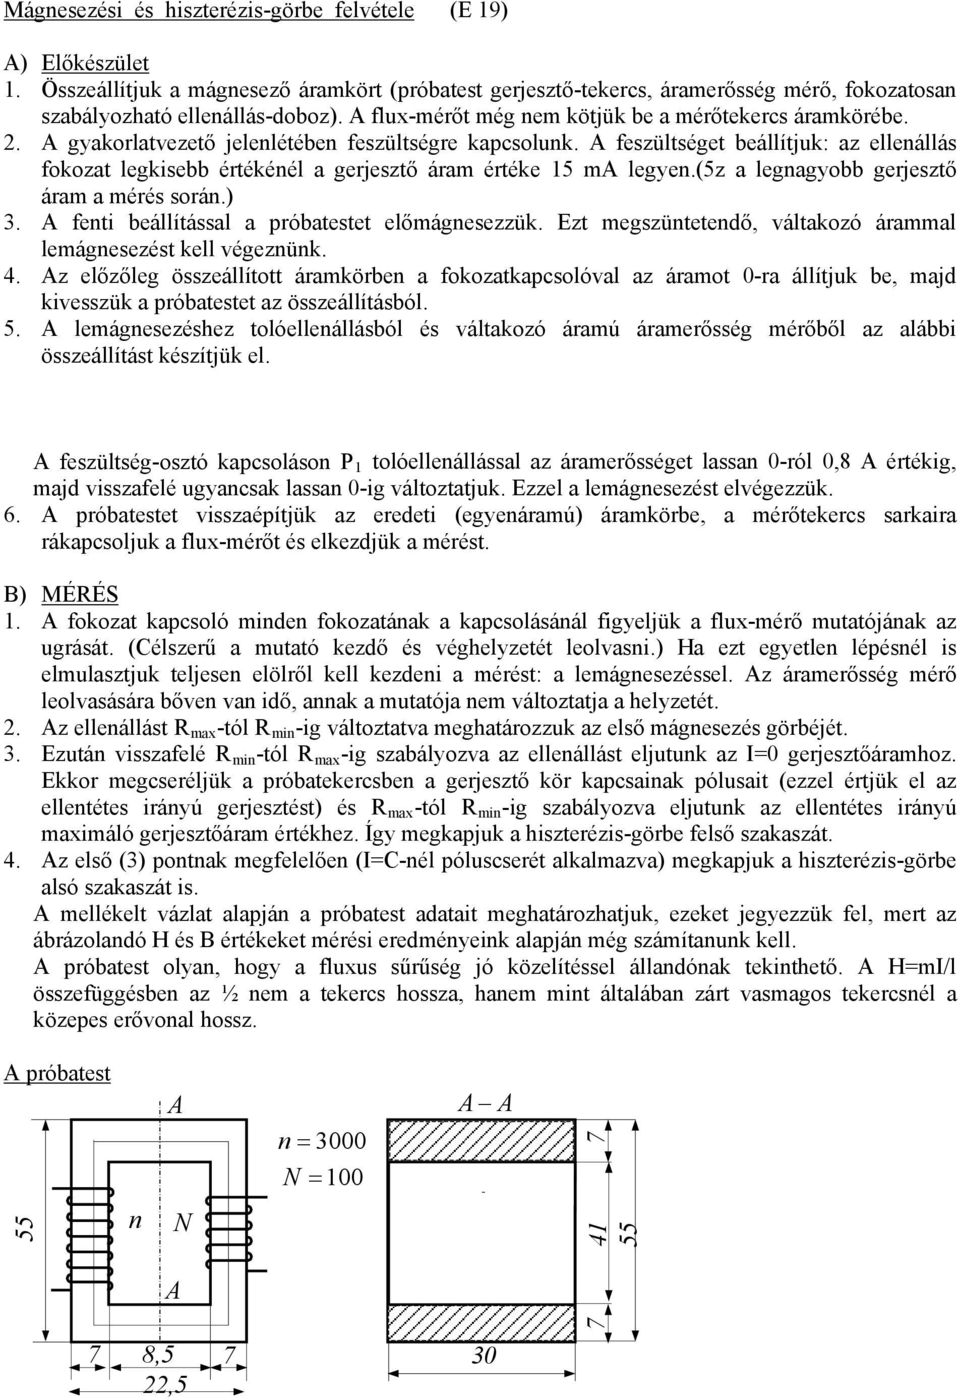 Konjunktív ellenállás és fémszálas izzó feszültség-áram  karakterisztikájának felvétele - PDF Ingyenes letöltés